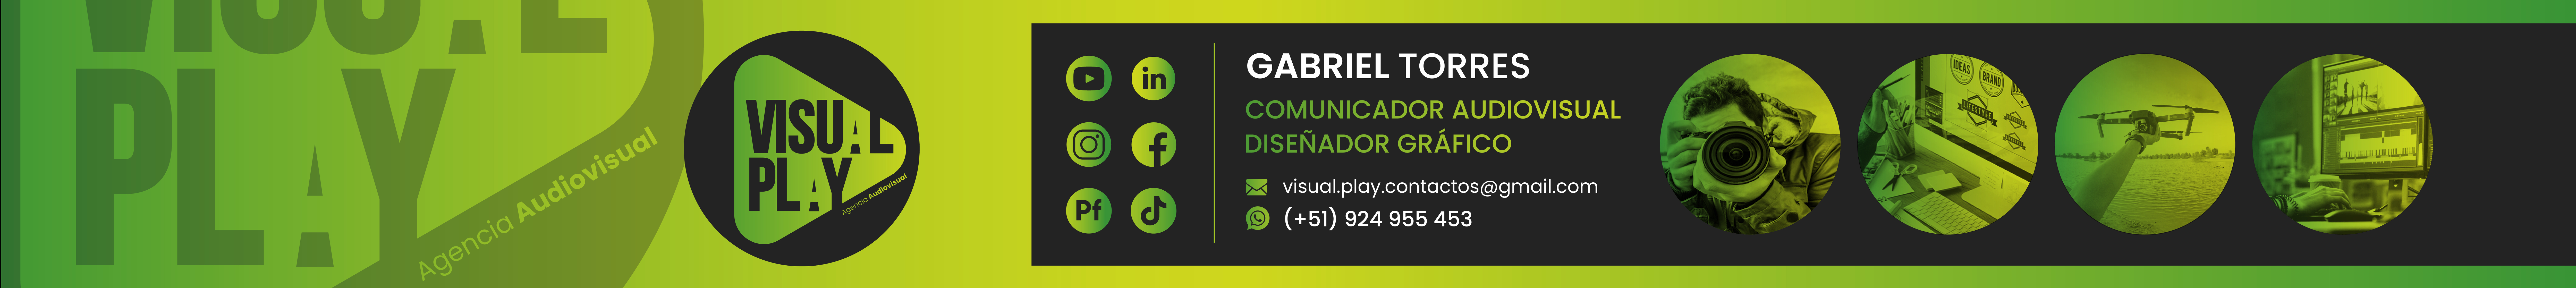 Gabo Torres's profile banner